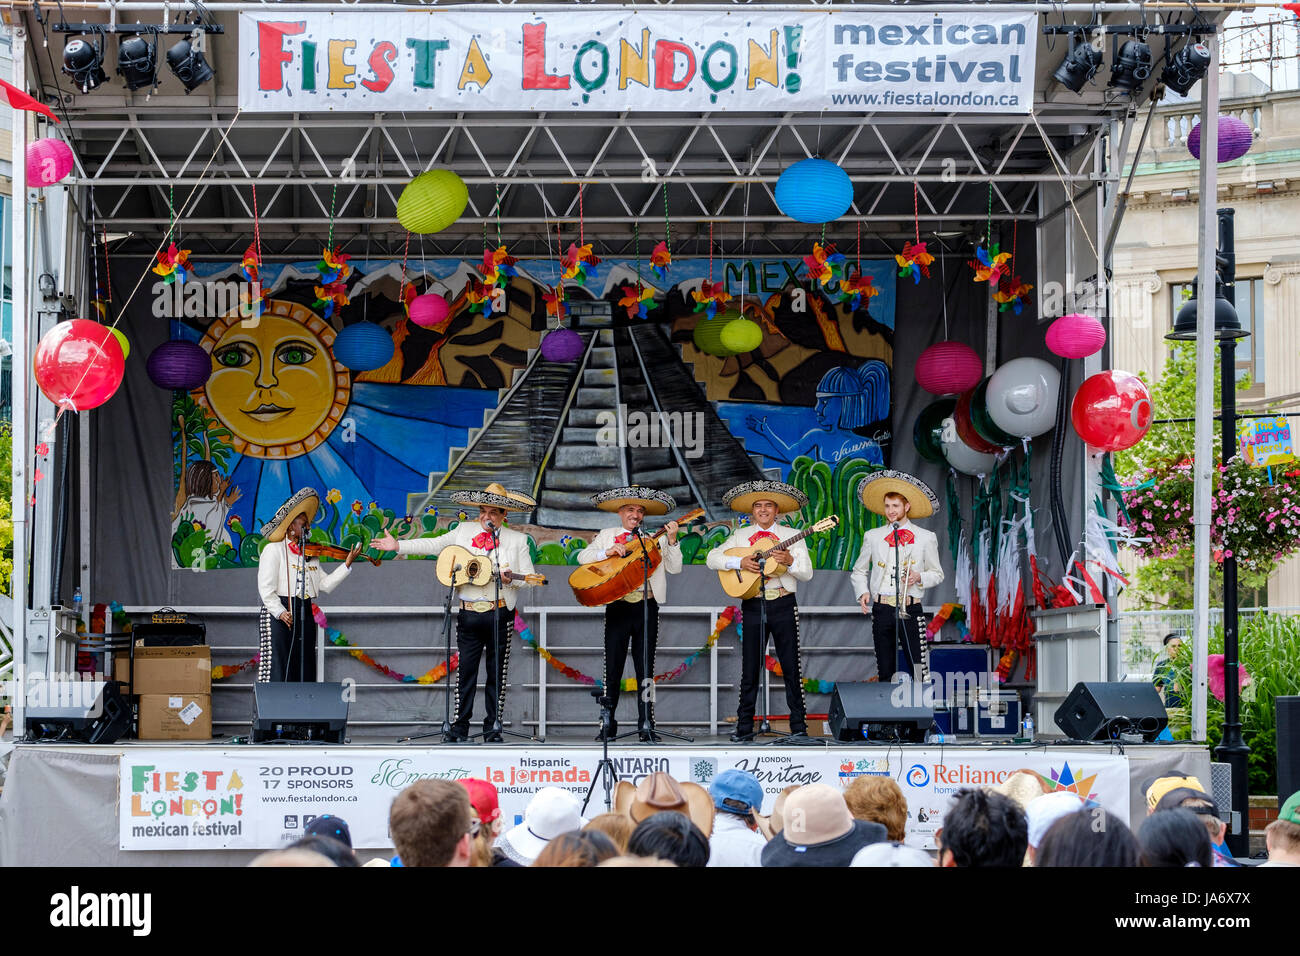 Mariachi traditionnel groupe jouant de la musique live sur la scène de la Fiesta ! Festival mexicain, groupe mariachi mariachi, musiciens, la musique traditionnelle mexicaine, groupe de cinq musiciens Mexicains Mexique portant des sombreros et jouant des instruments mariachi. Banque D'Images